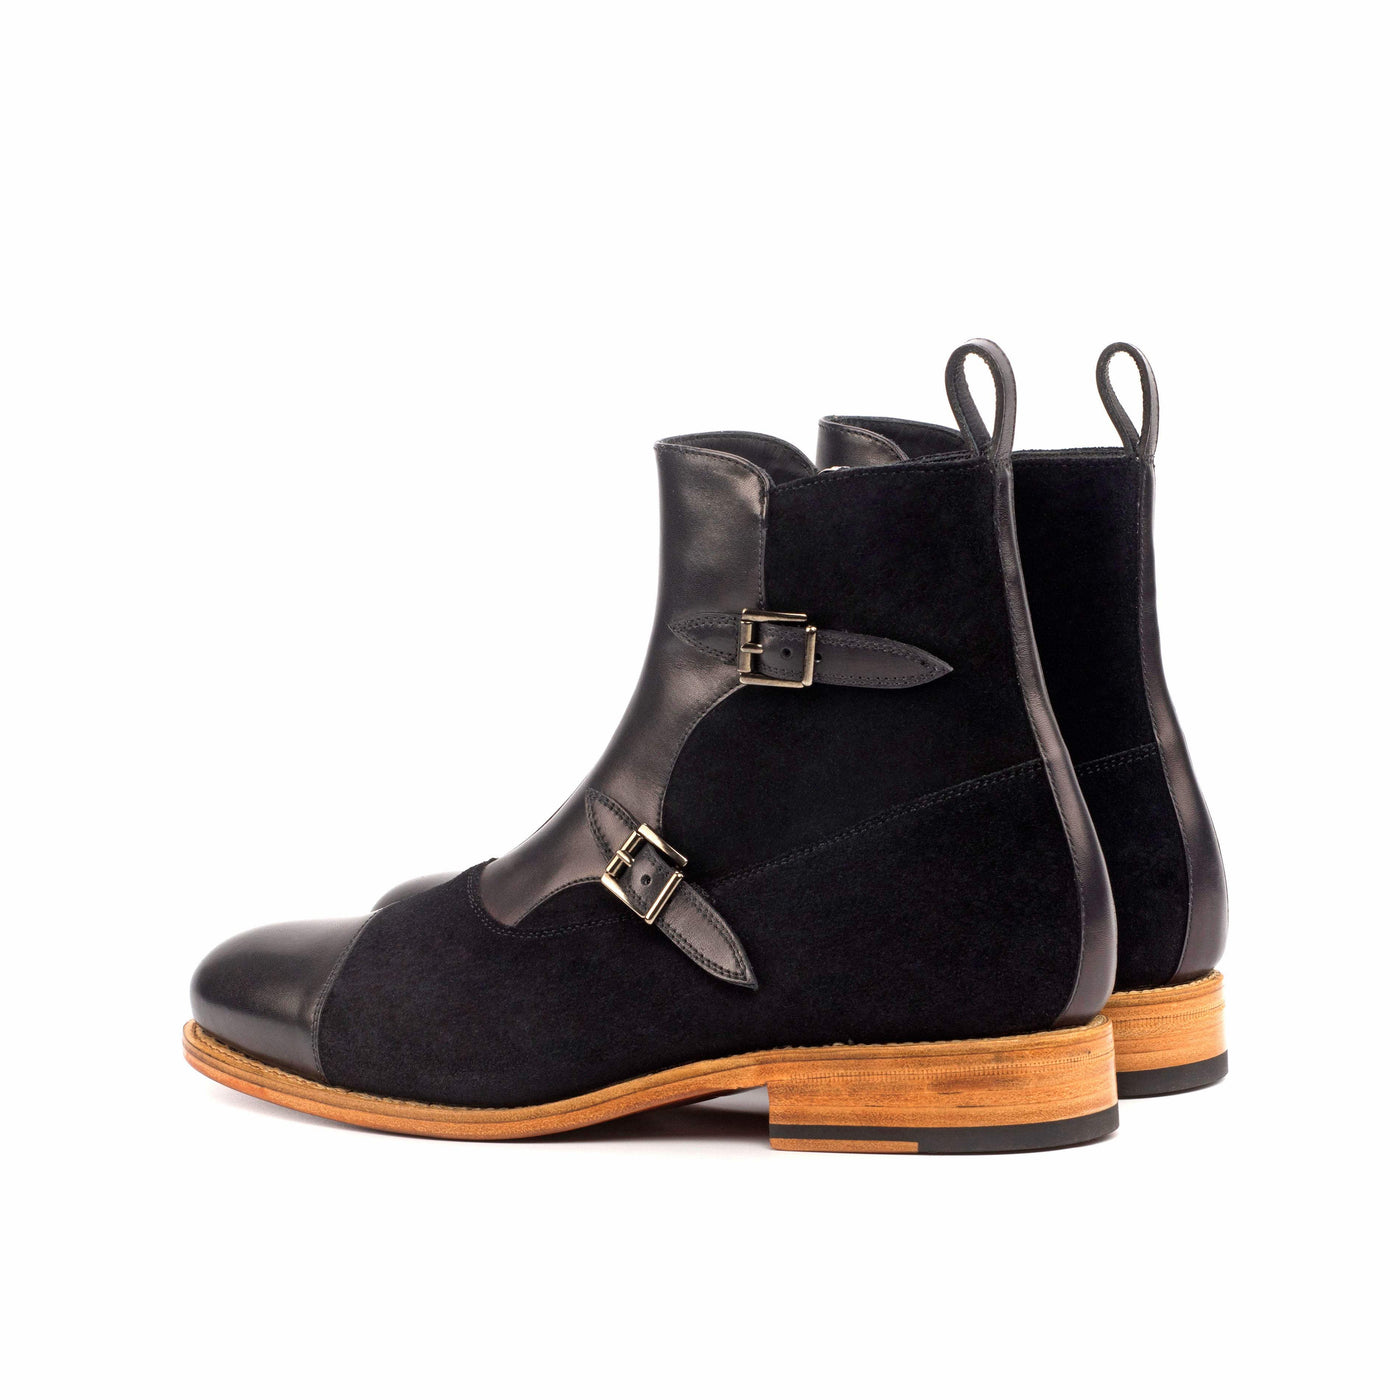 Men's Octavian Buckle Boots Leather Goodyear Welt Black 4560 4- MERRIMIUM